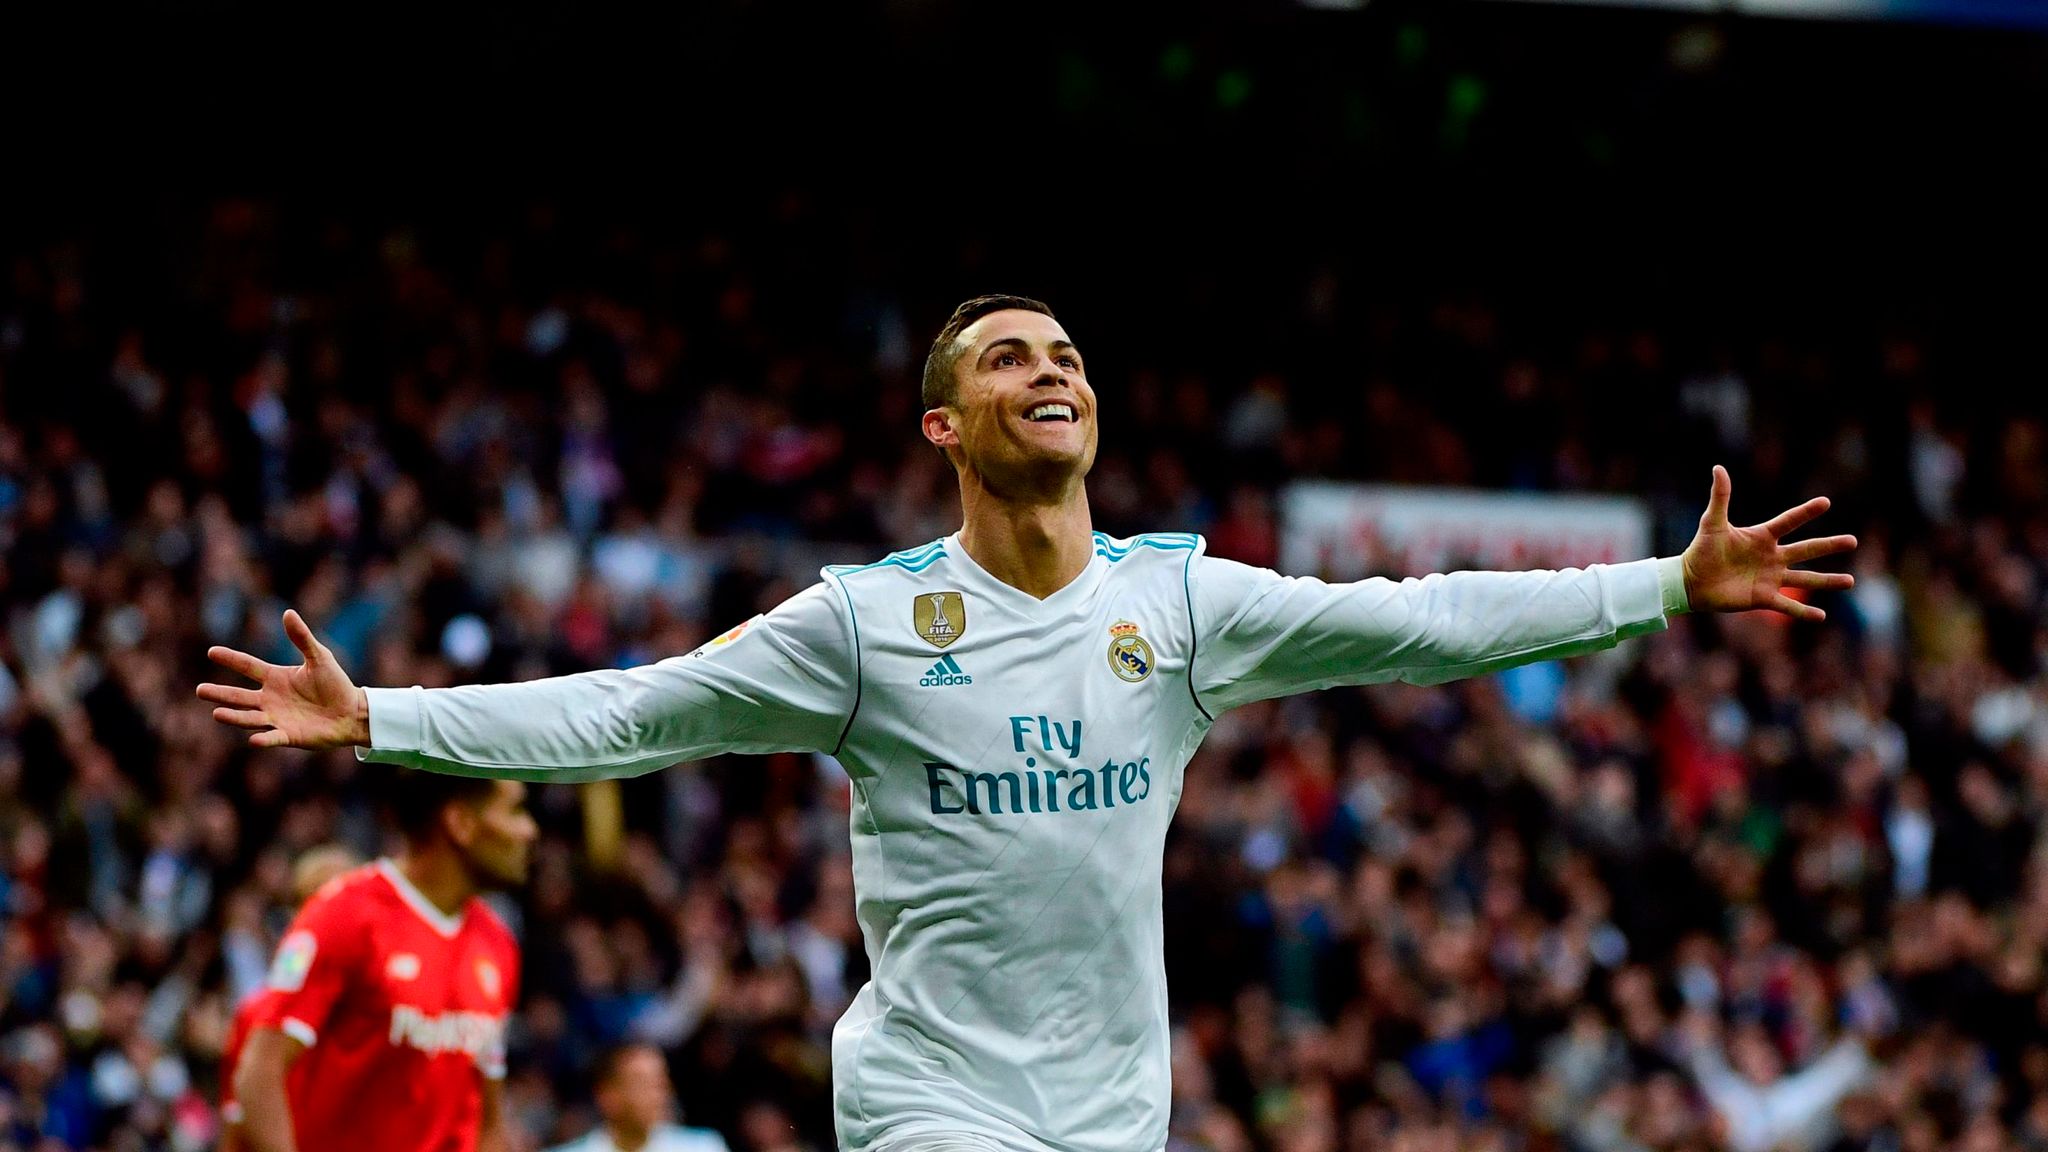 Khi tham gia chơi tại Real Madrid, Ronaldo có bao nhiêu bàn thắng